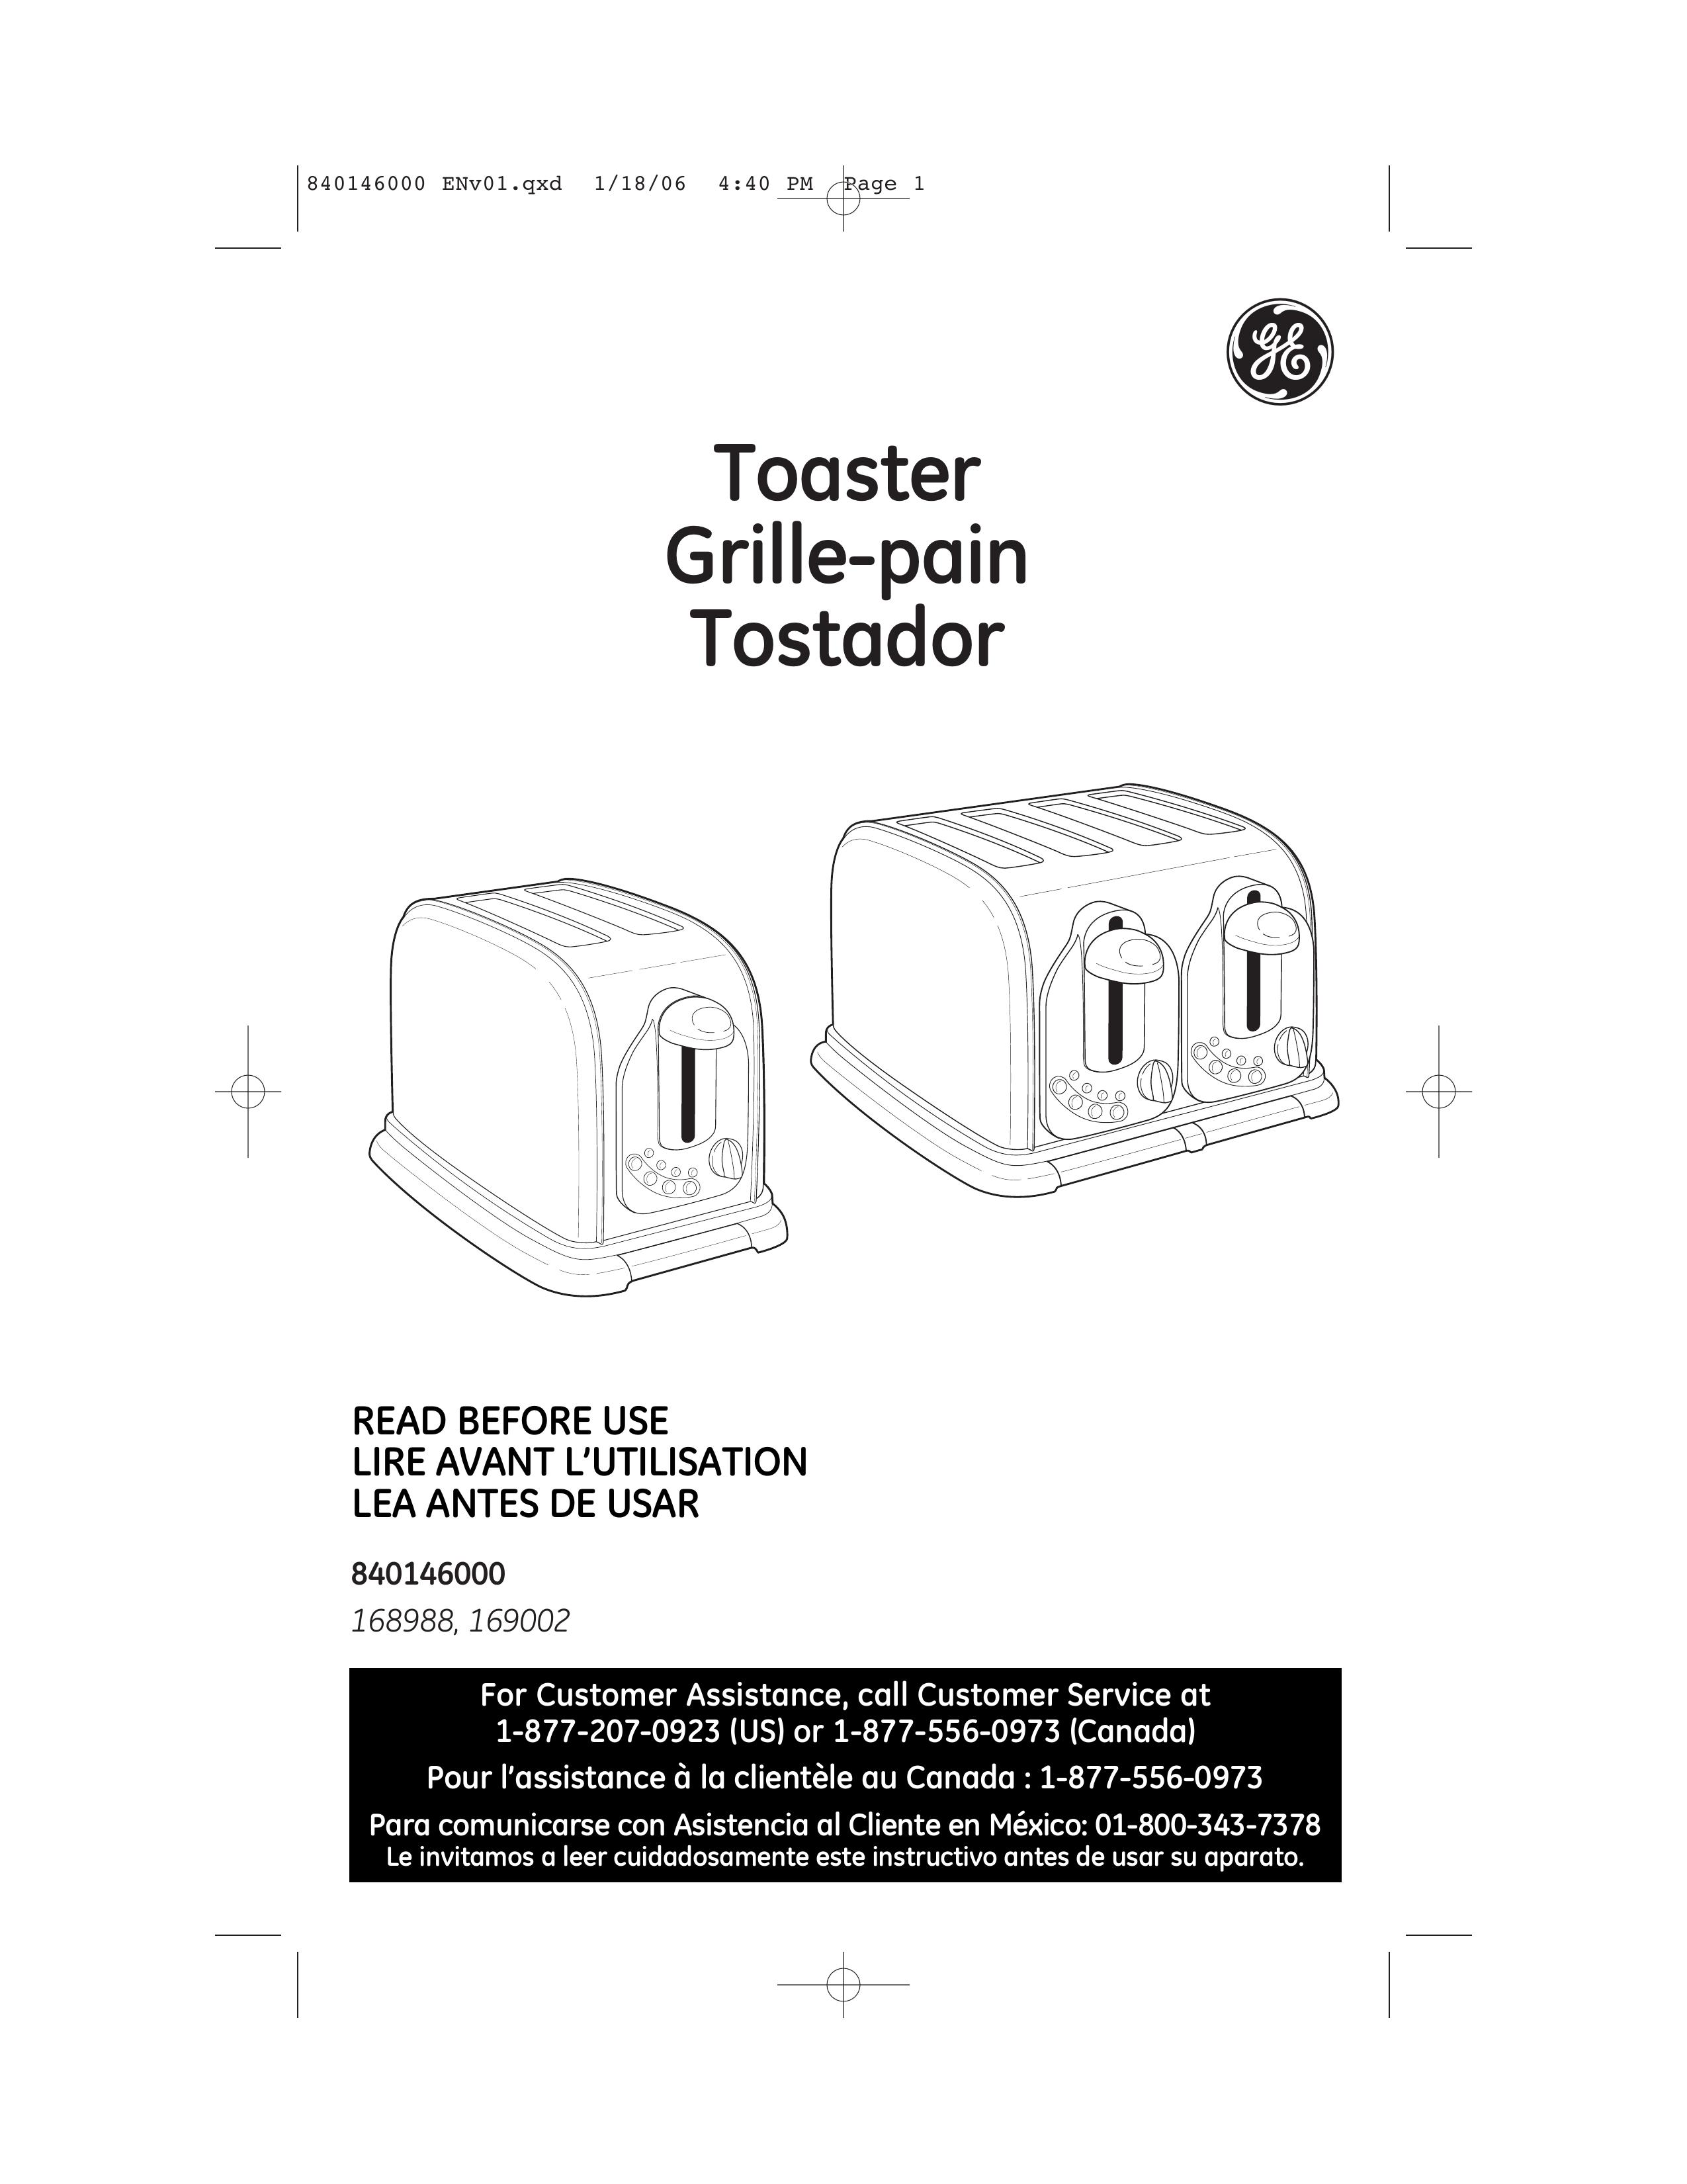 GE 840146000 Toaster User Manual